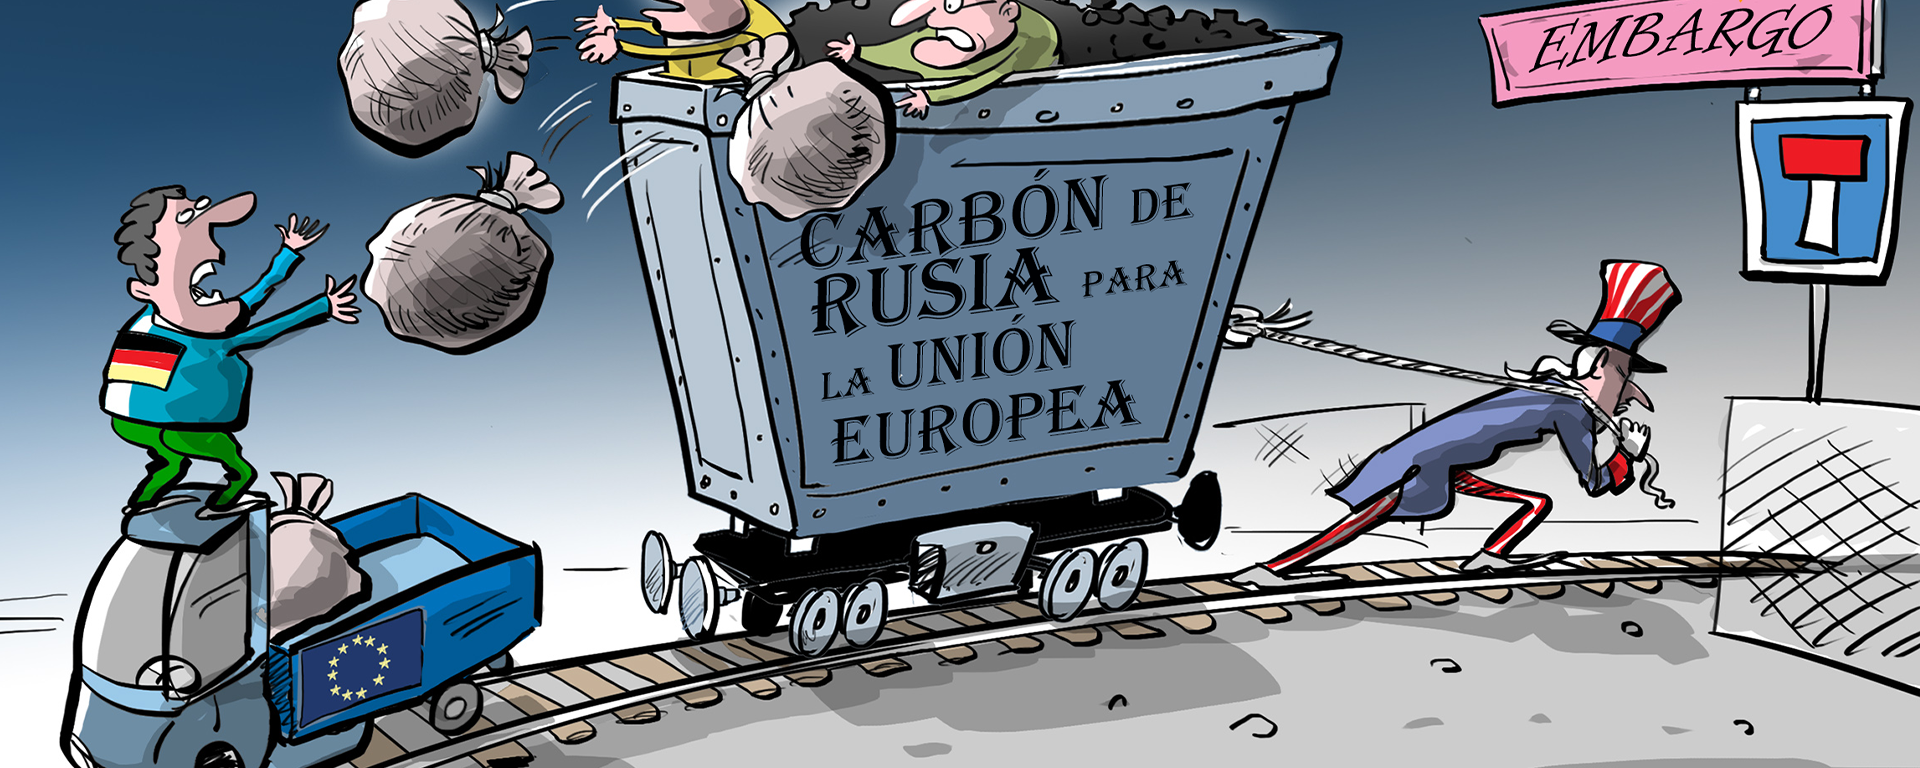 Los países de la UE aumentan las importaciones de carbón de Rusia antes del embargo  - Sputnik Mundo, 1920, 11.08.2022